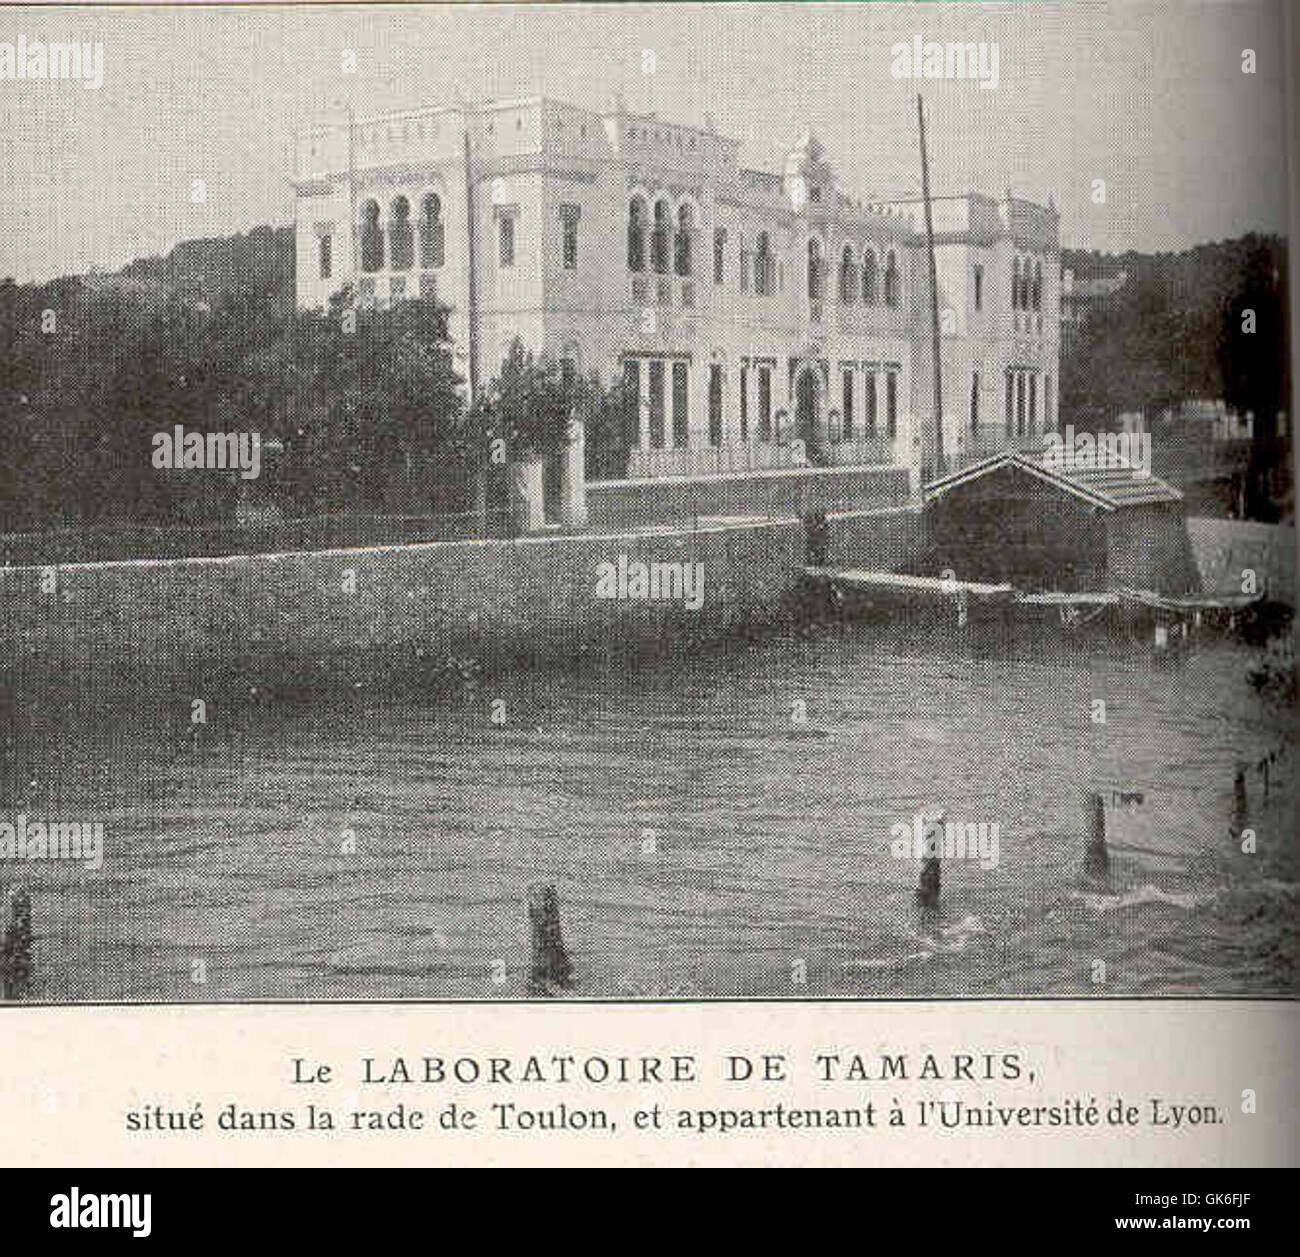 36973 Laboratoire de Tamaris, Situe dans la rade de Toulon, et appartenant a l'Universite de Lyon Stock Photo